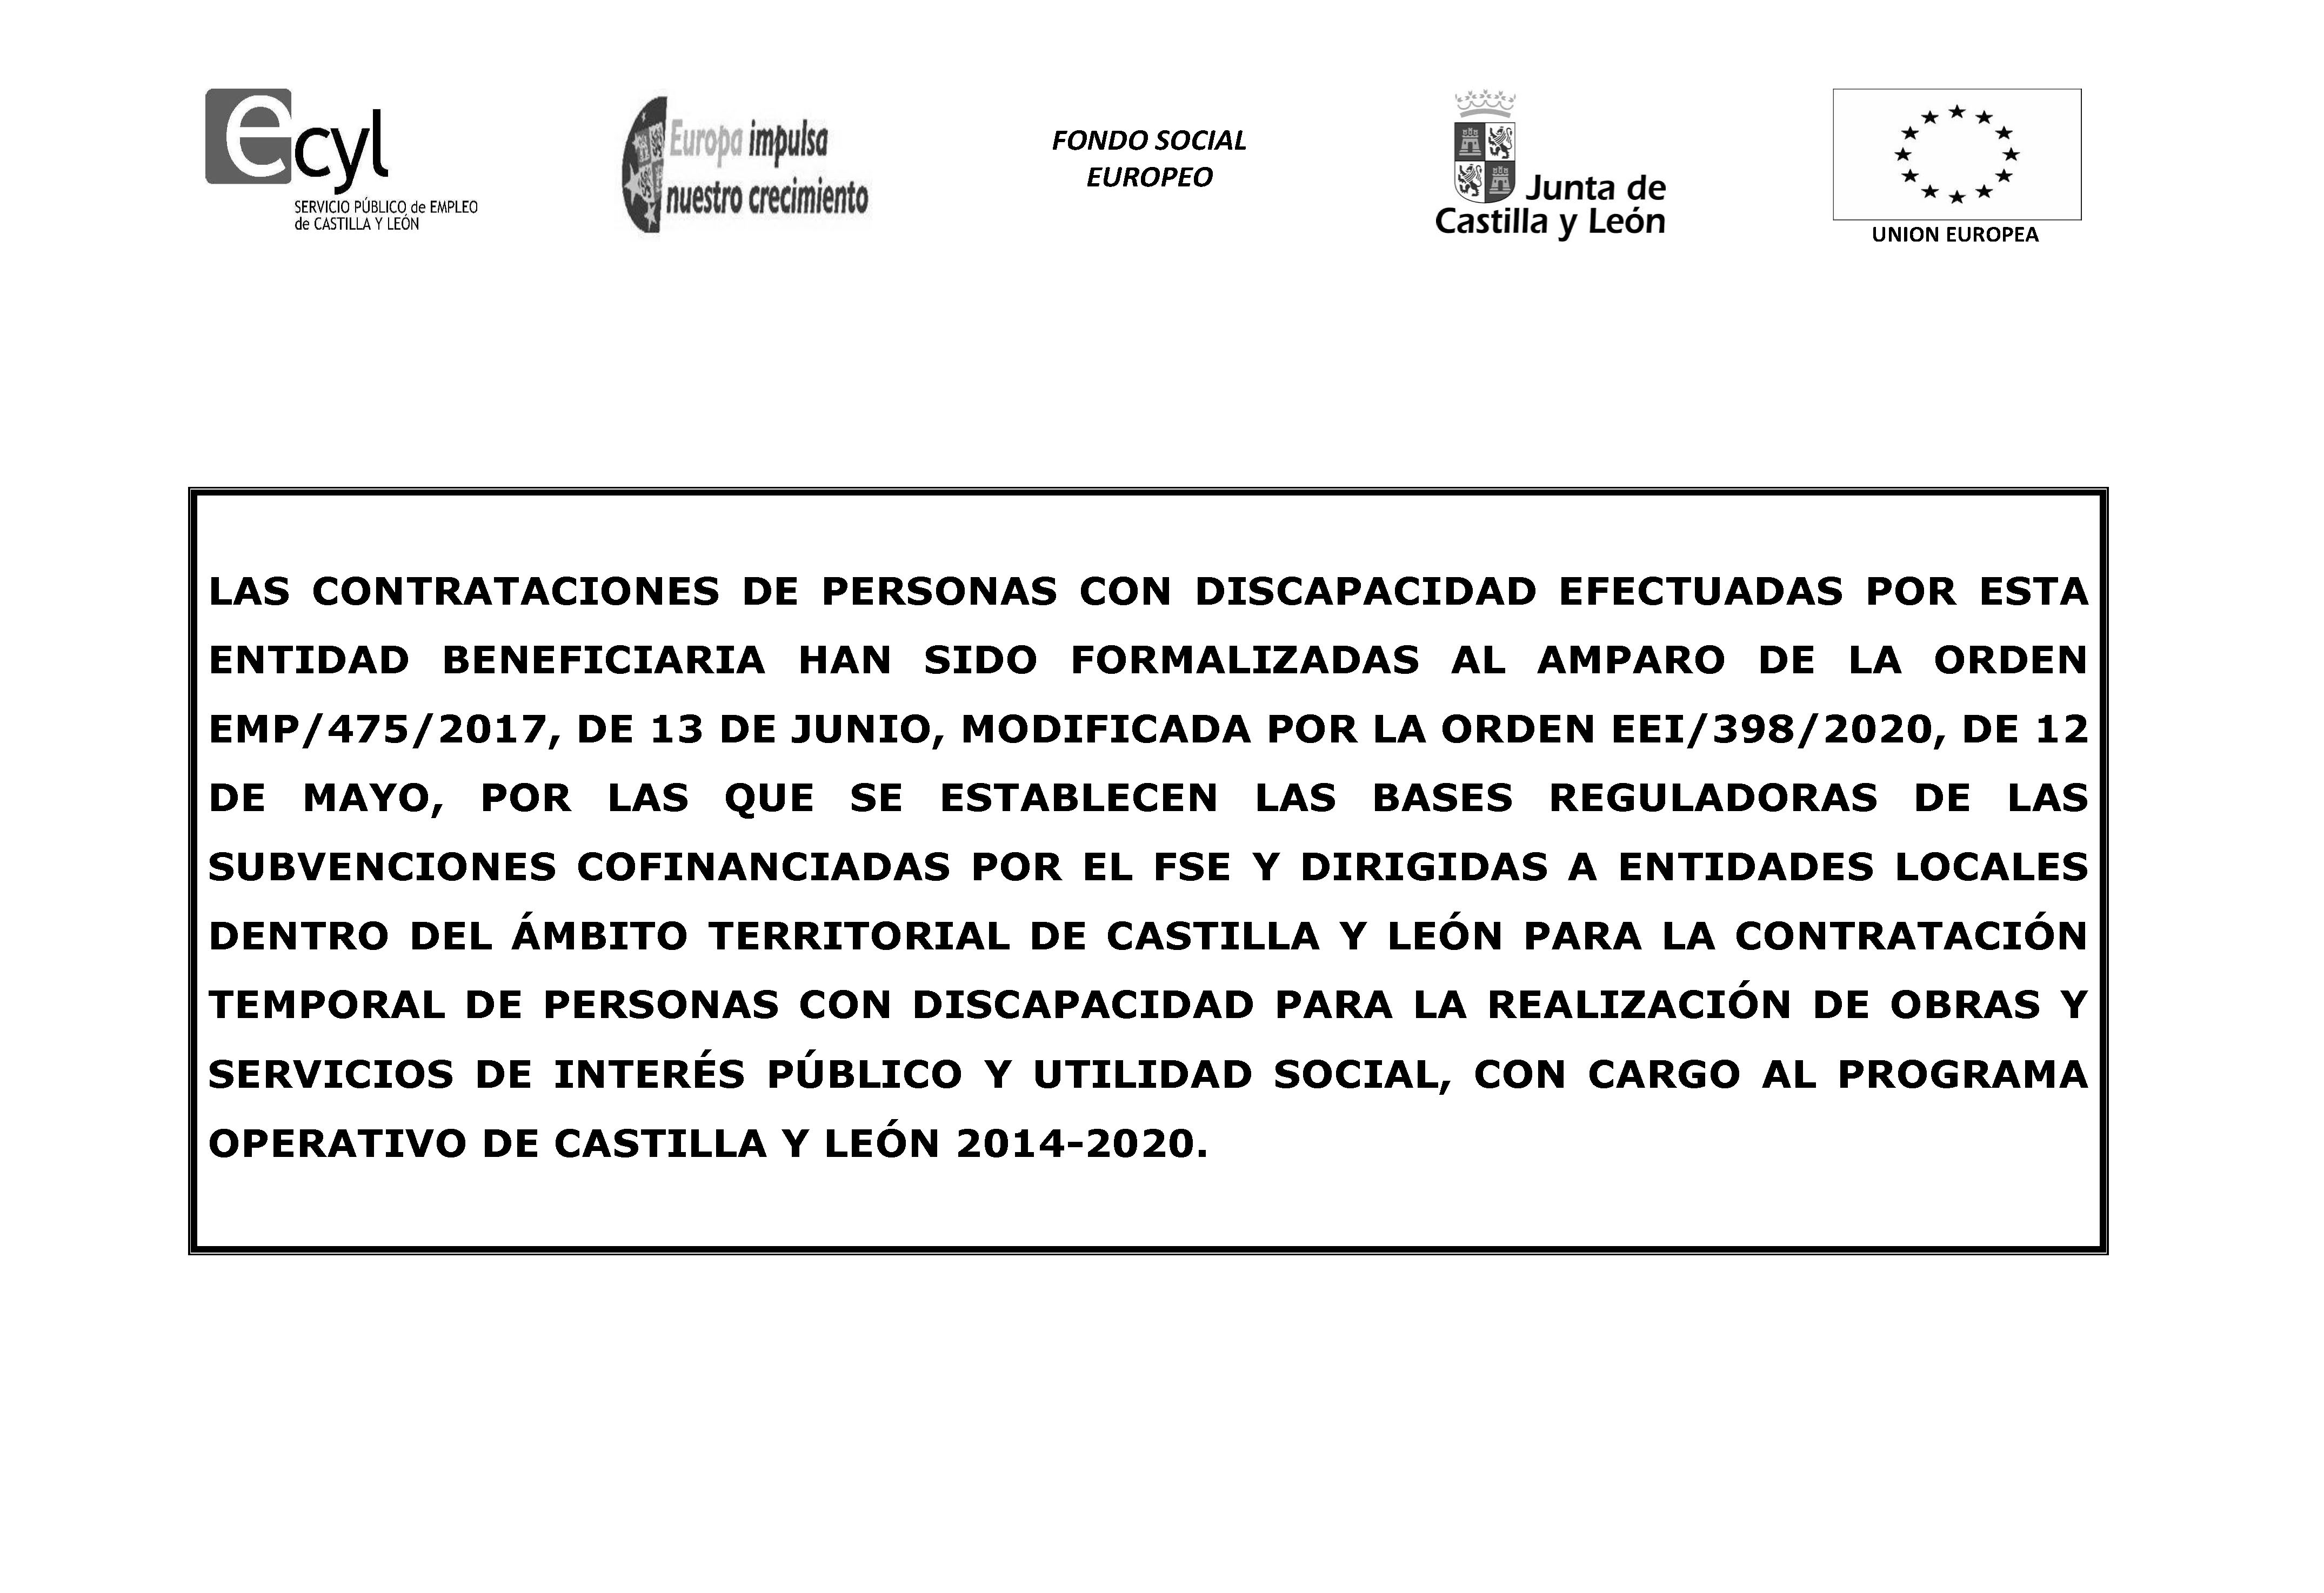 Contrataciones de personas con discapacidad por medio del programa operativo de castilla y león 2014-2020